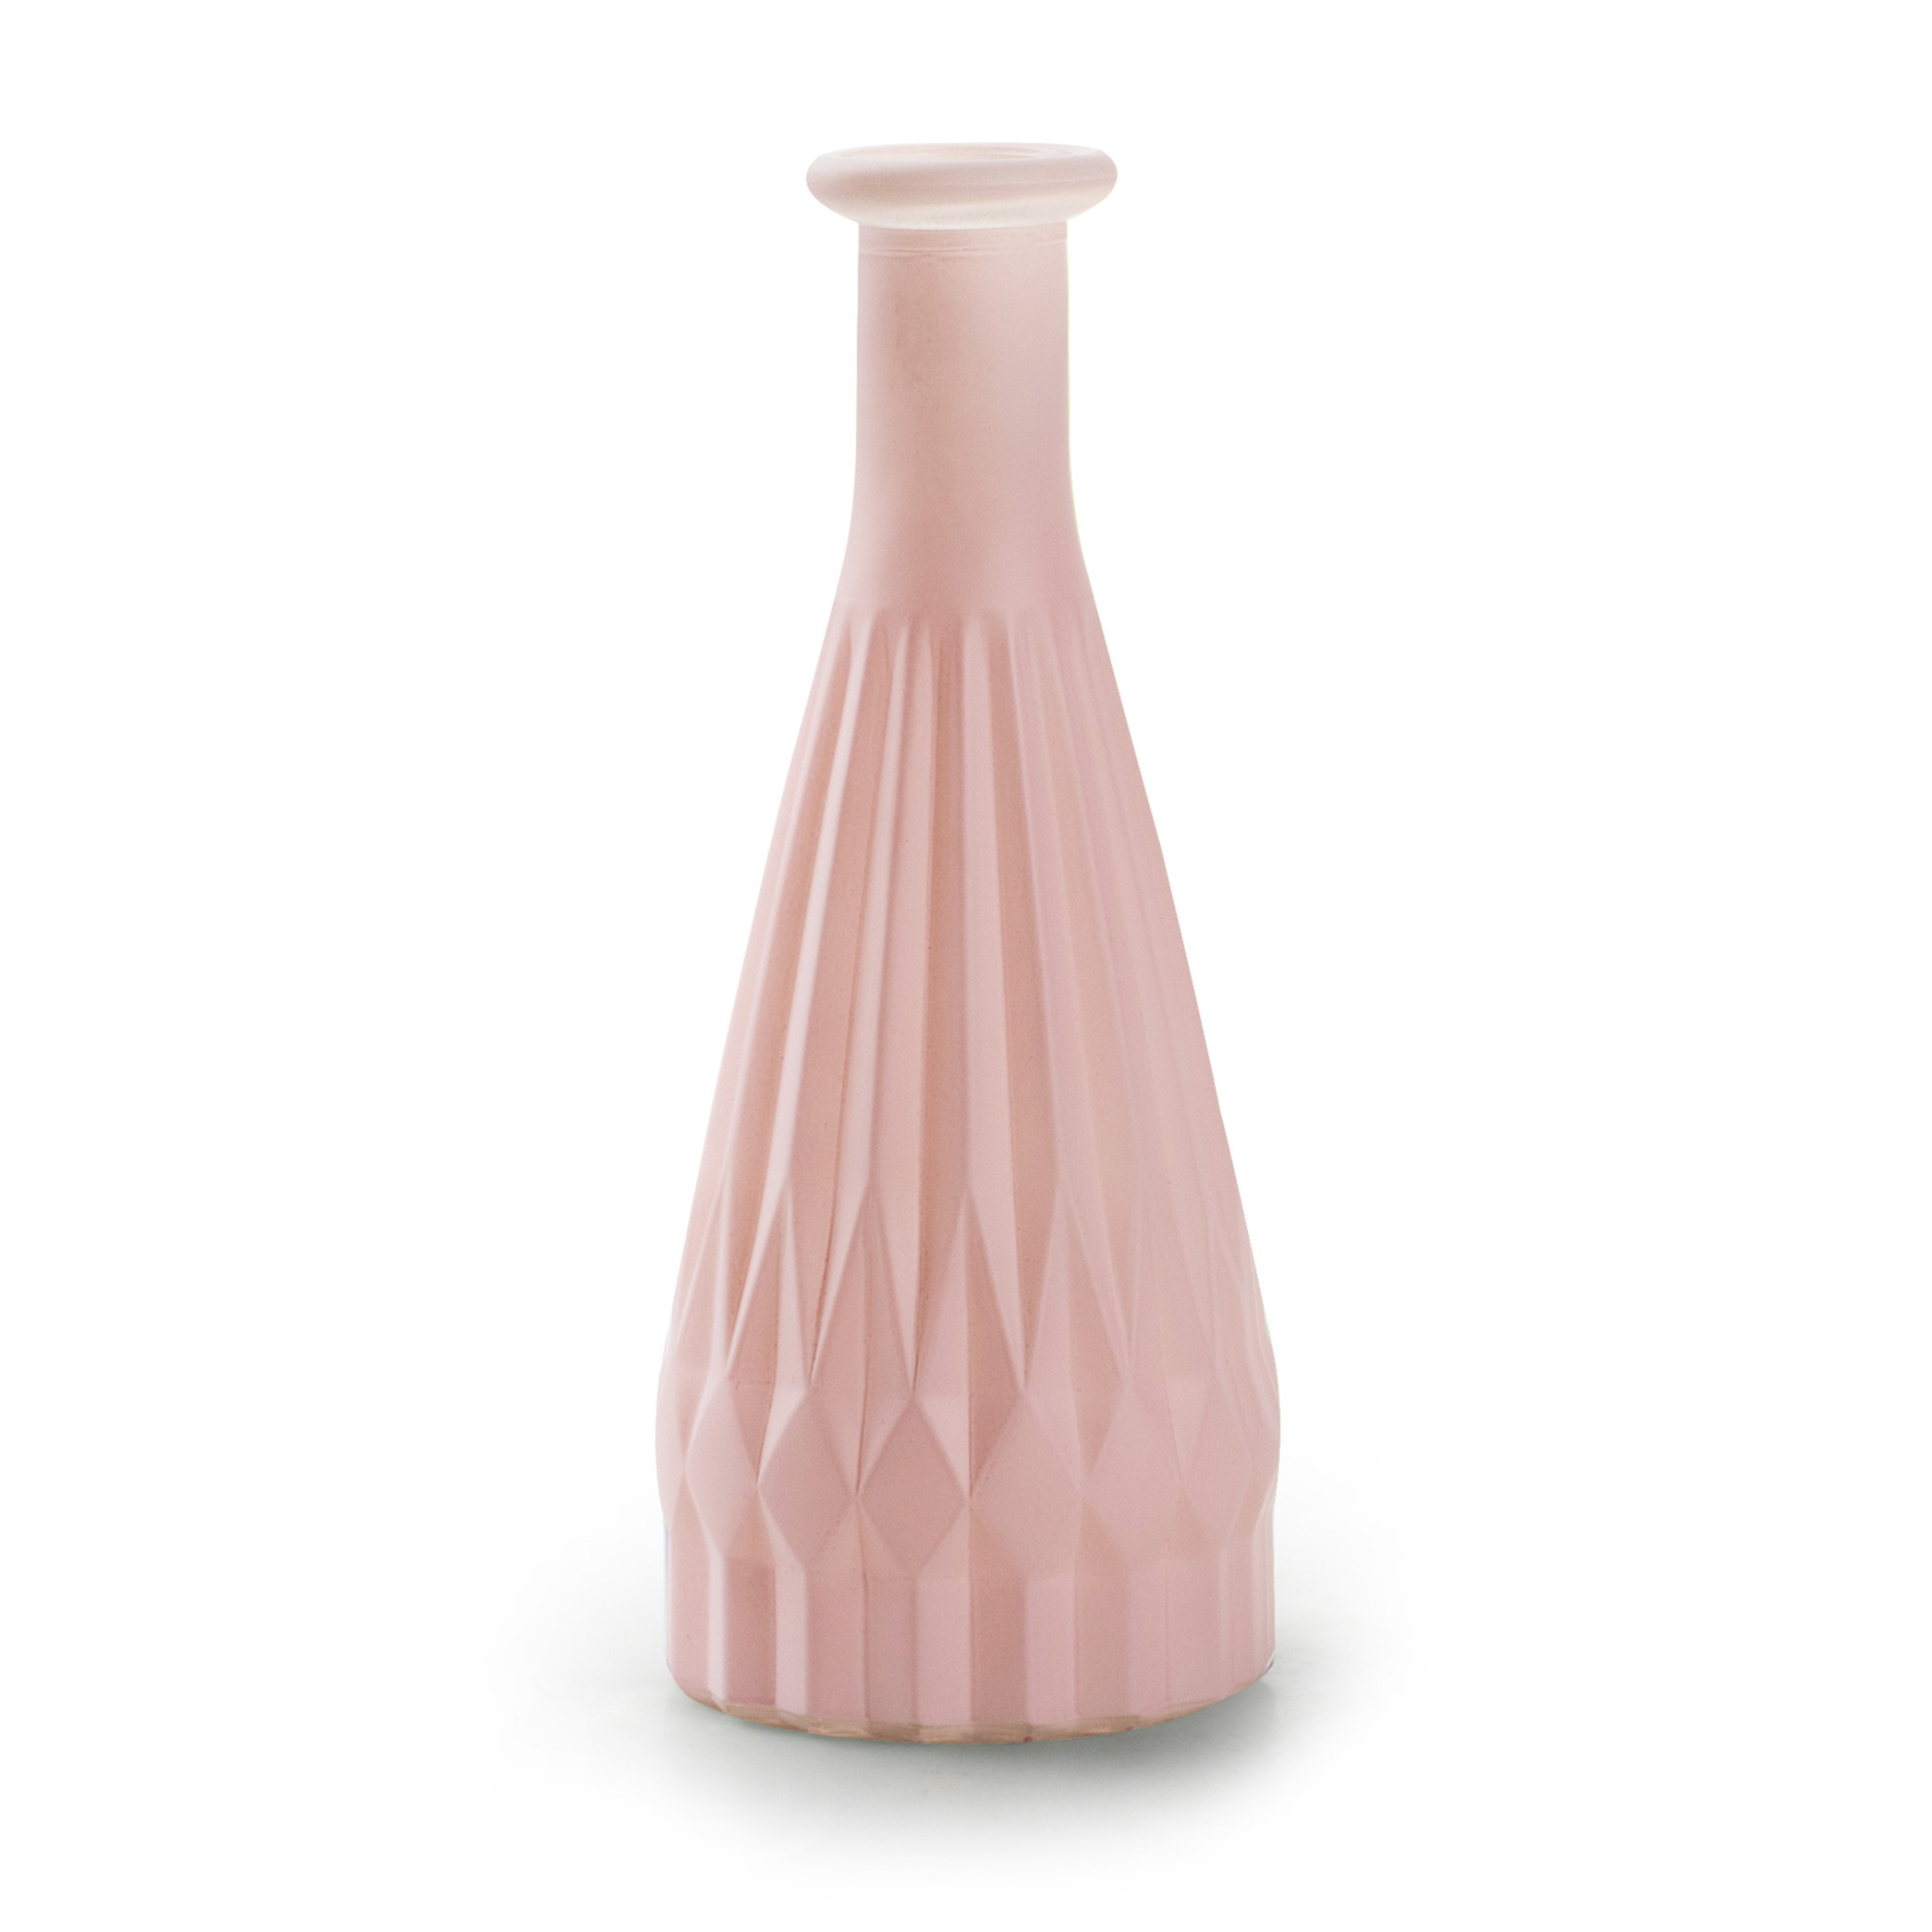 Bloemenvaas Patty mat roze glas D8,5 x H21 cm - fles vaas